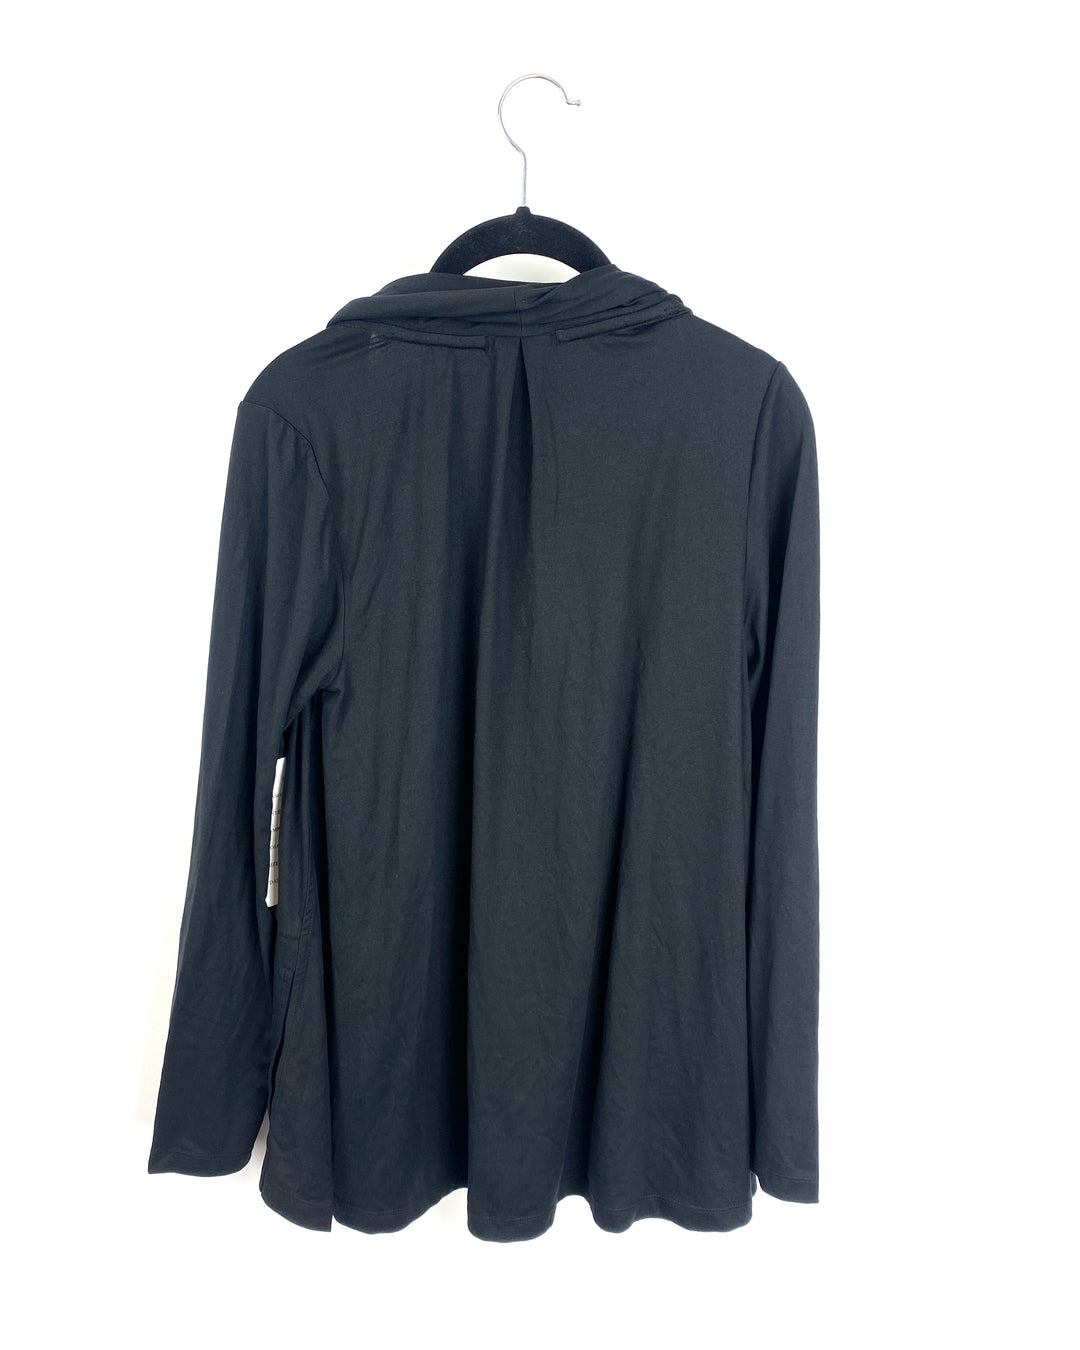 Black Long Sleeve Cardigan - Size 6-8